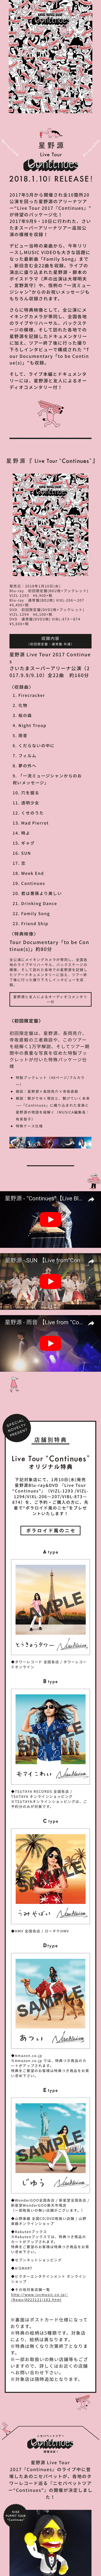 星野源 Live Tour 2017『Continues』特設サイト_sp_1